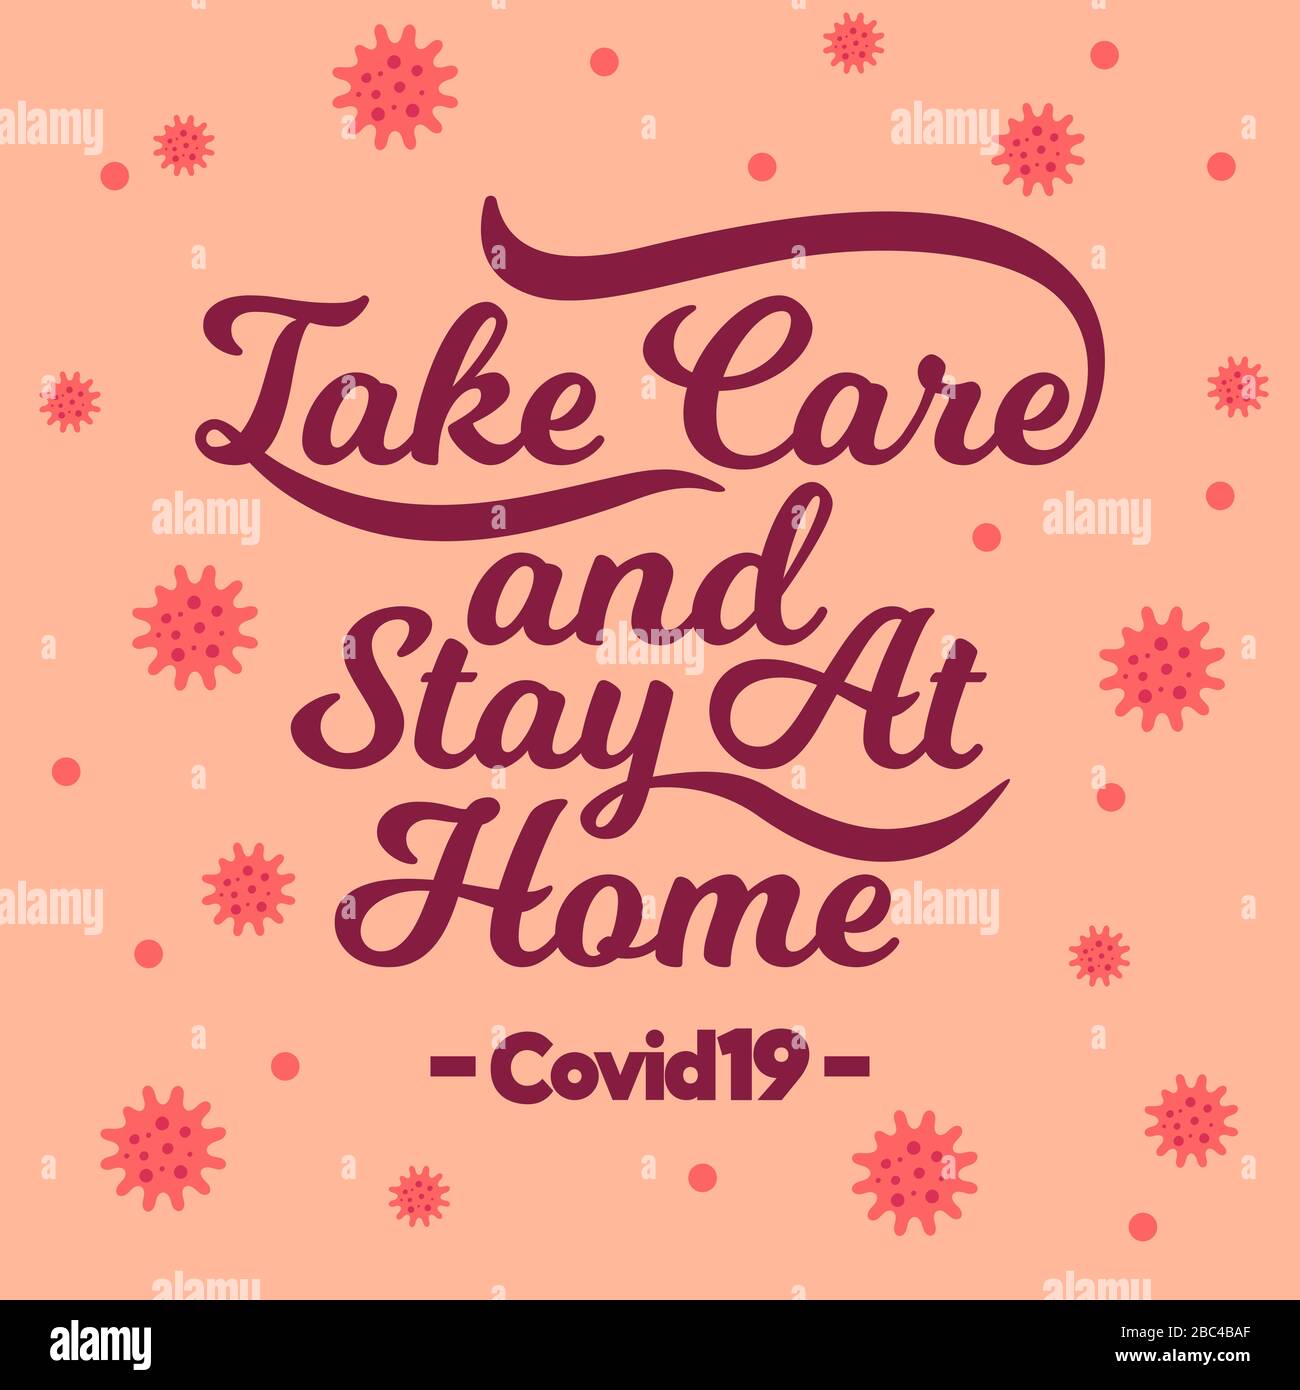 Corona-Virus, Corona-Viruserkrankung COVID-19, Roman Coronavirus 2019-nCoV. Corona-Virus-Angebot. Achten Sie darauf, dass Sie zu Hause bleiben. Handschriftlich, Typografie. Stock Vektor